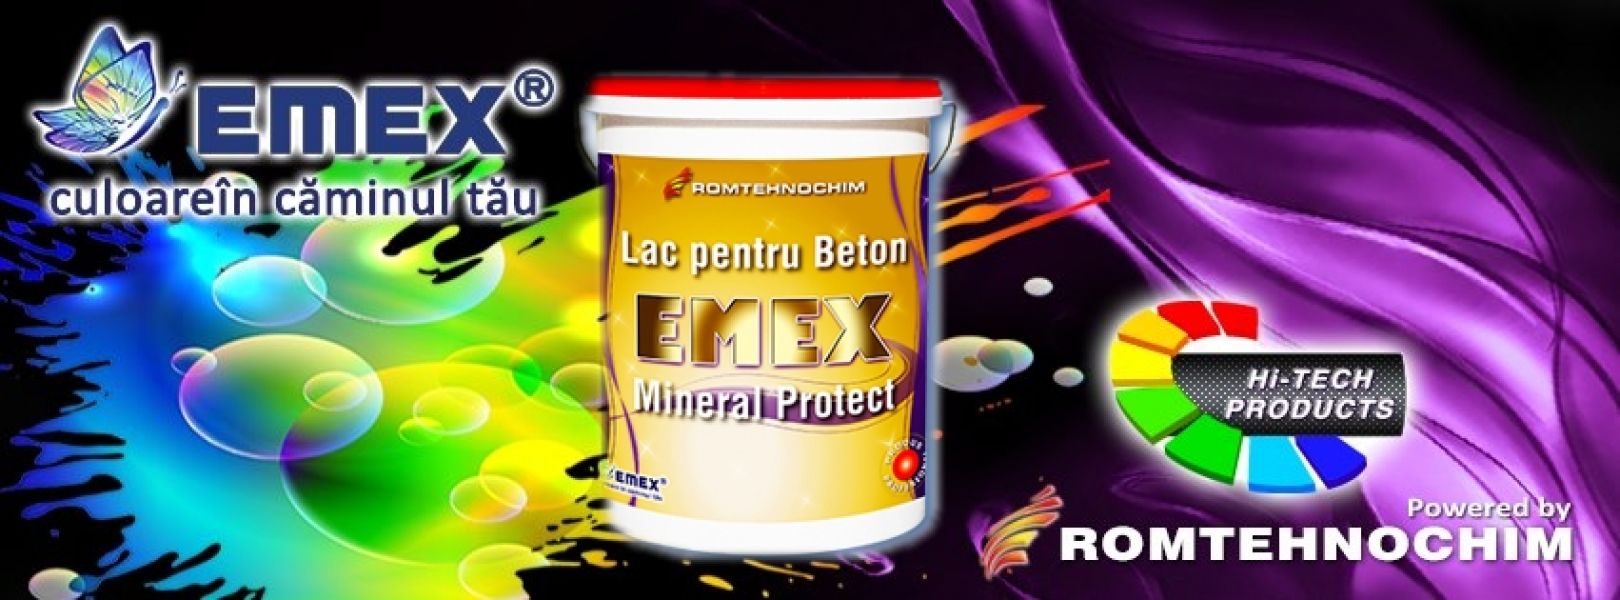 Lac pentru Protectie Beton EMEX MINERAL PROTECT - 23,80 Ron/Kg